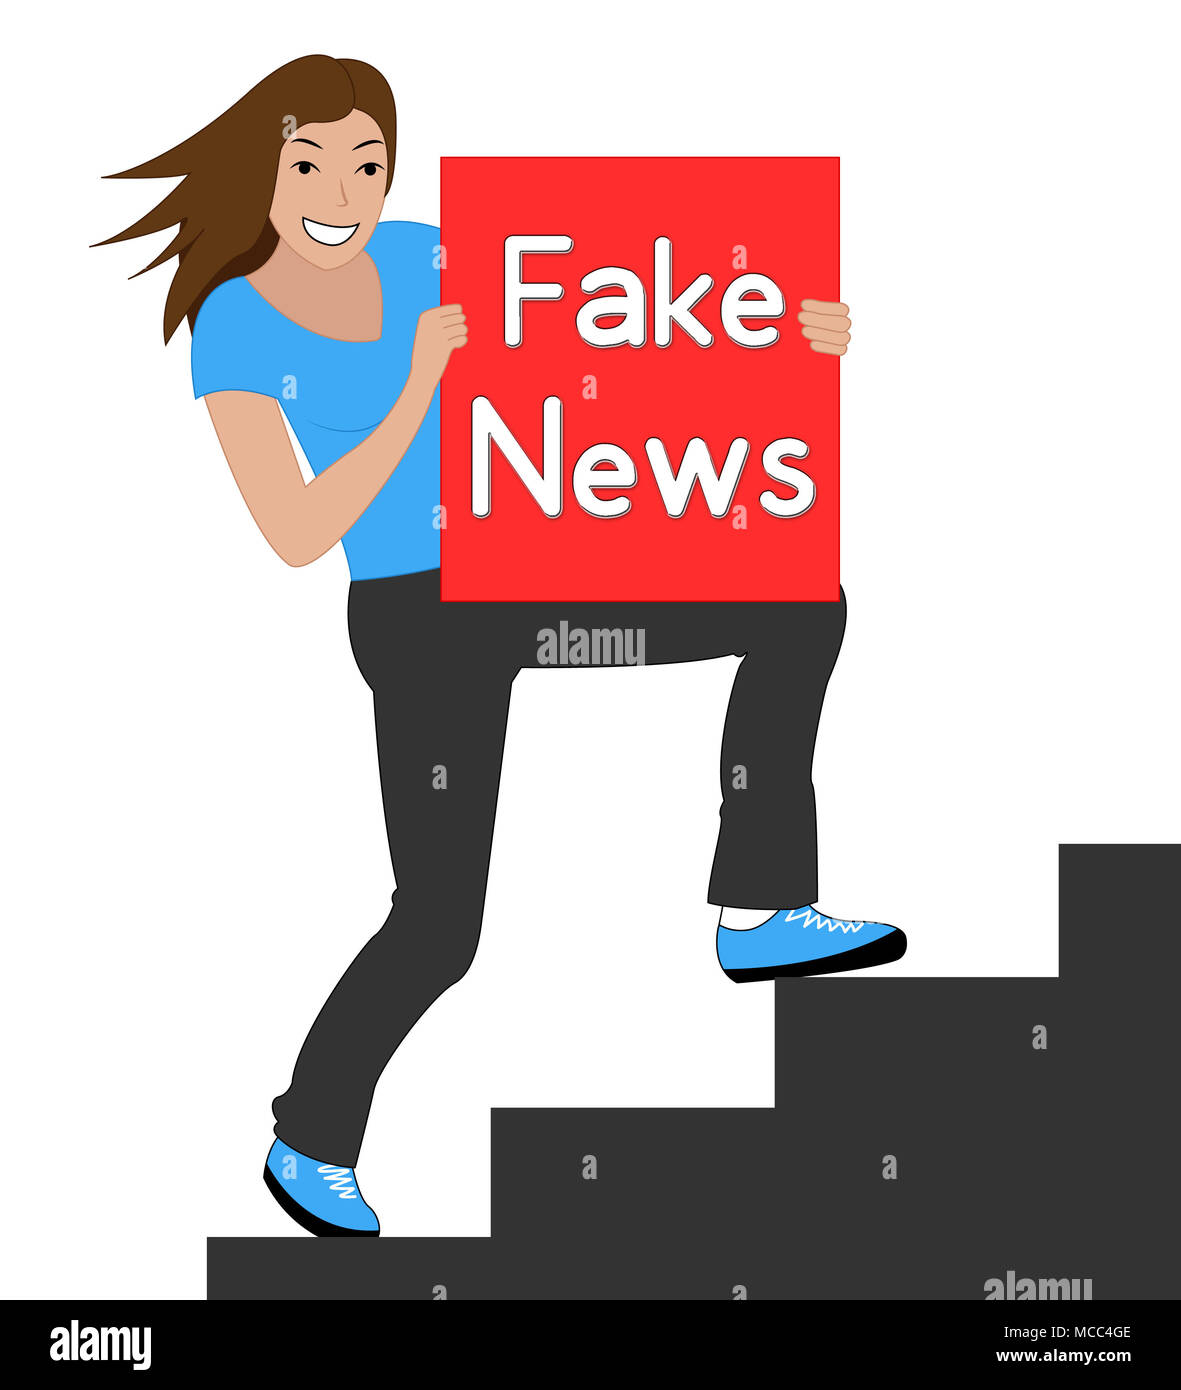 Fake News femme signifie autre Faits 3d illustration Banque D'Images